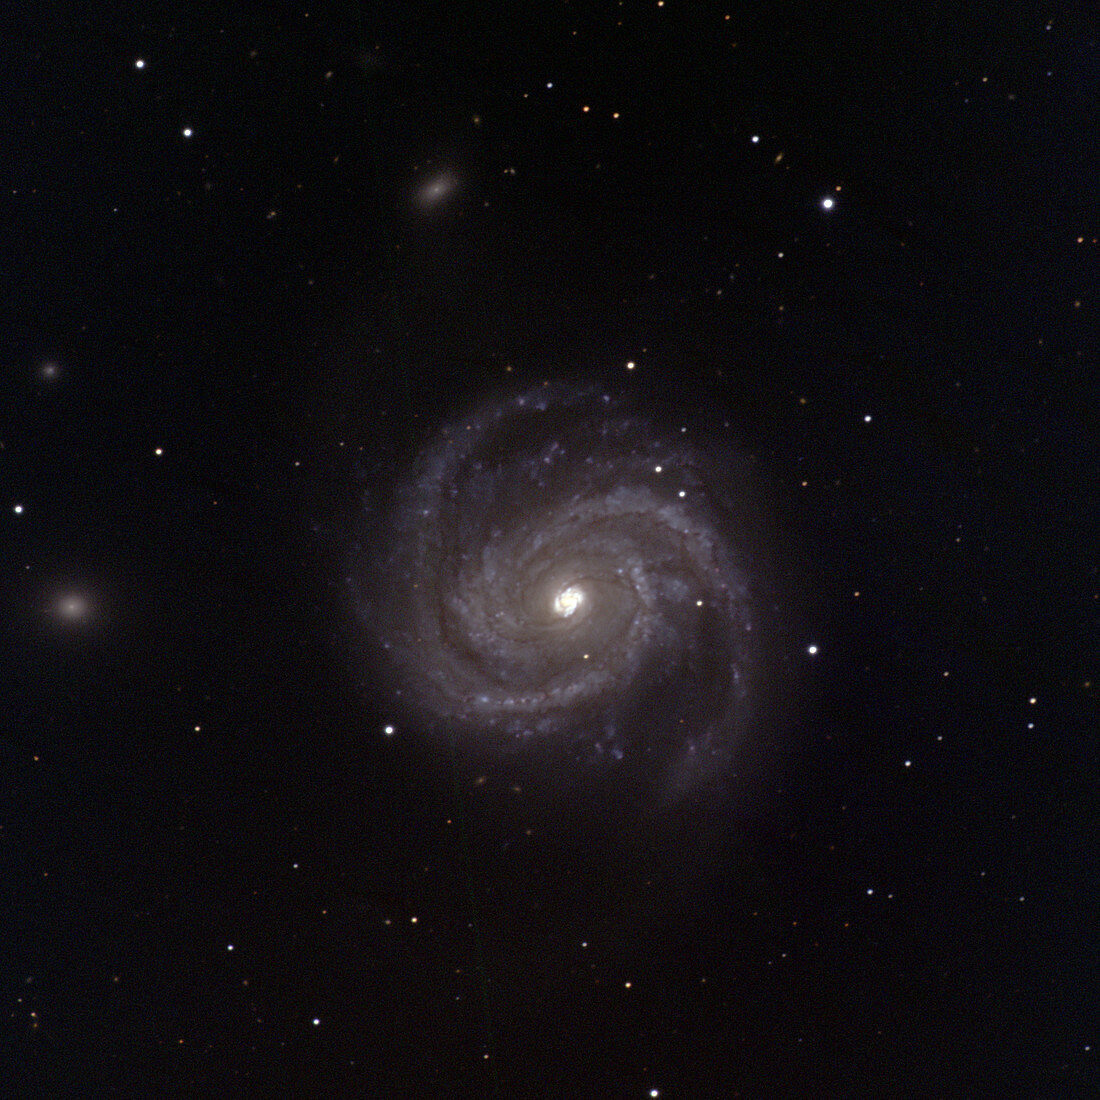 Spiral galaxy M100